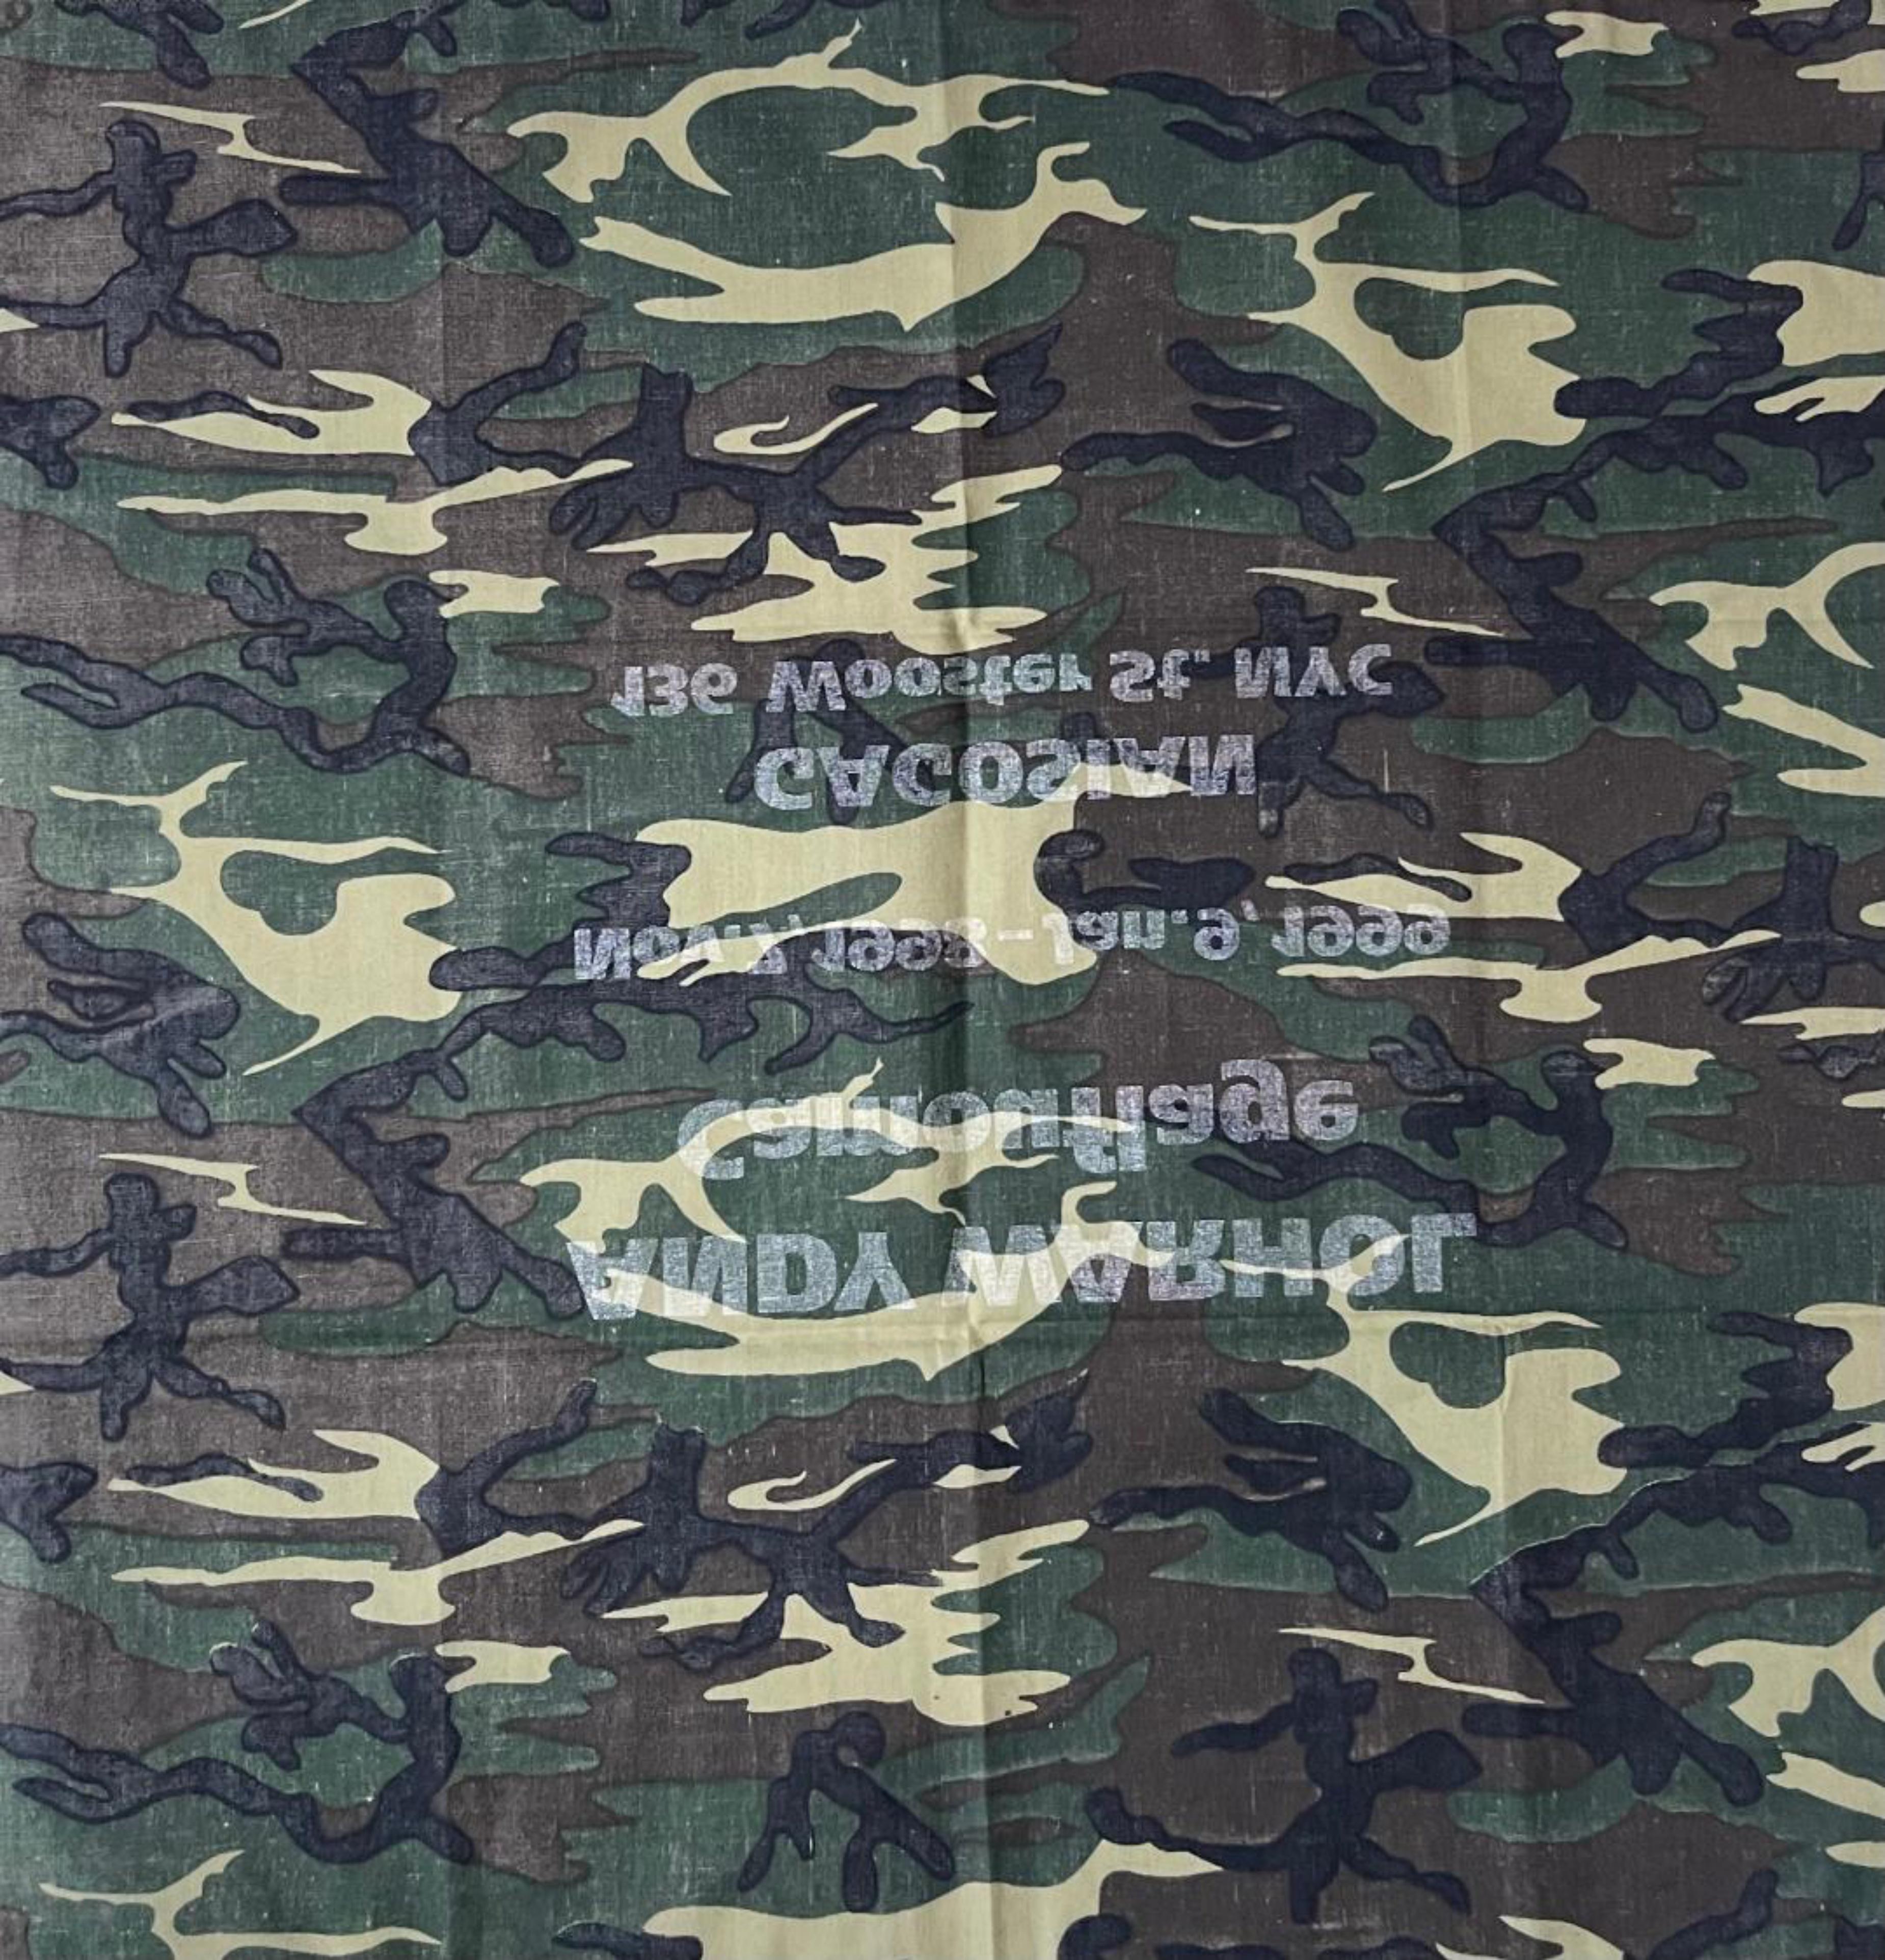 Écharpe/bandana d'annonce de la galerie Gagosian, exposition de camouflages d'Andy Warhol en vente 2